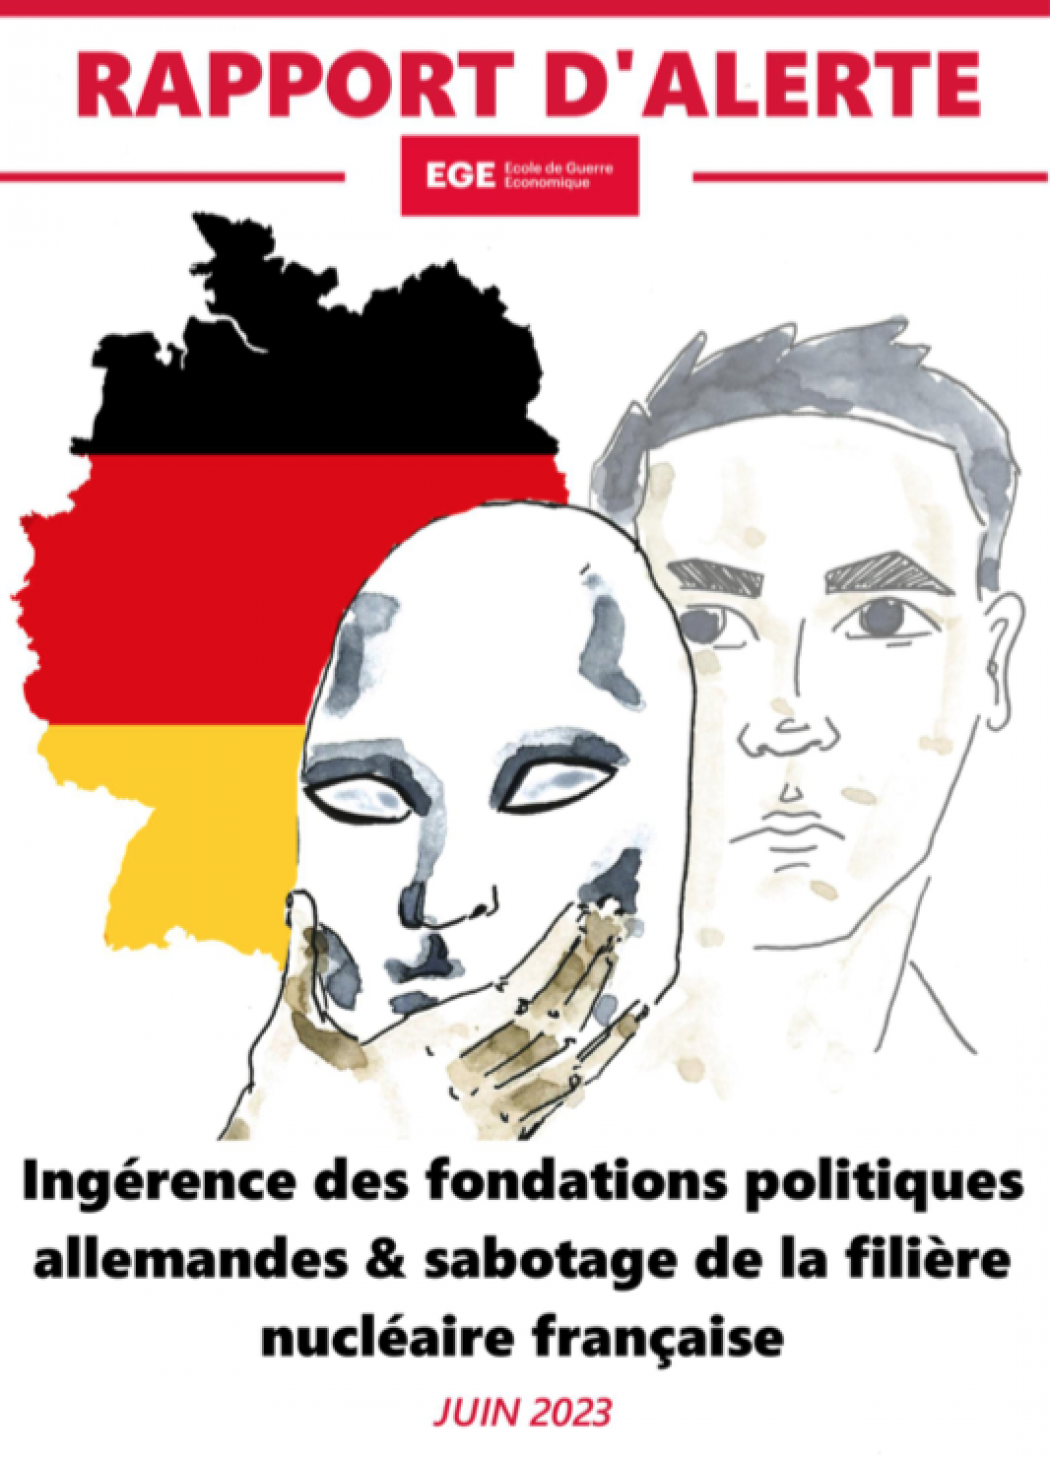 L’Allemagne, par le biais de ses fondations politiques, interfère dans les affaires politiques et économiques de la France